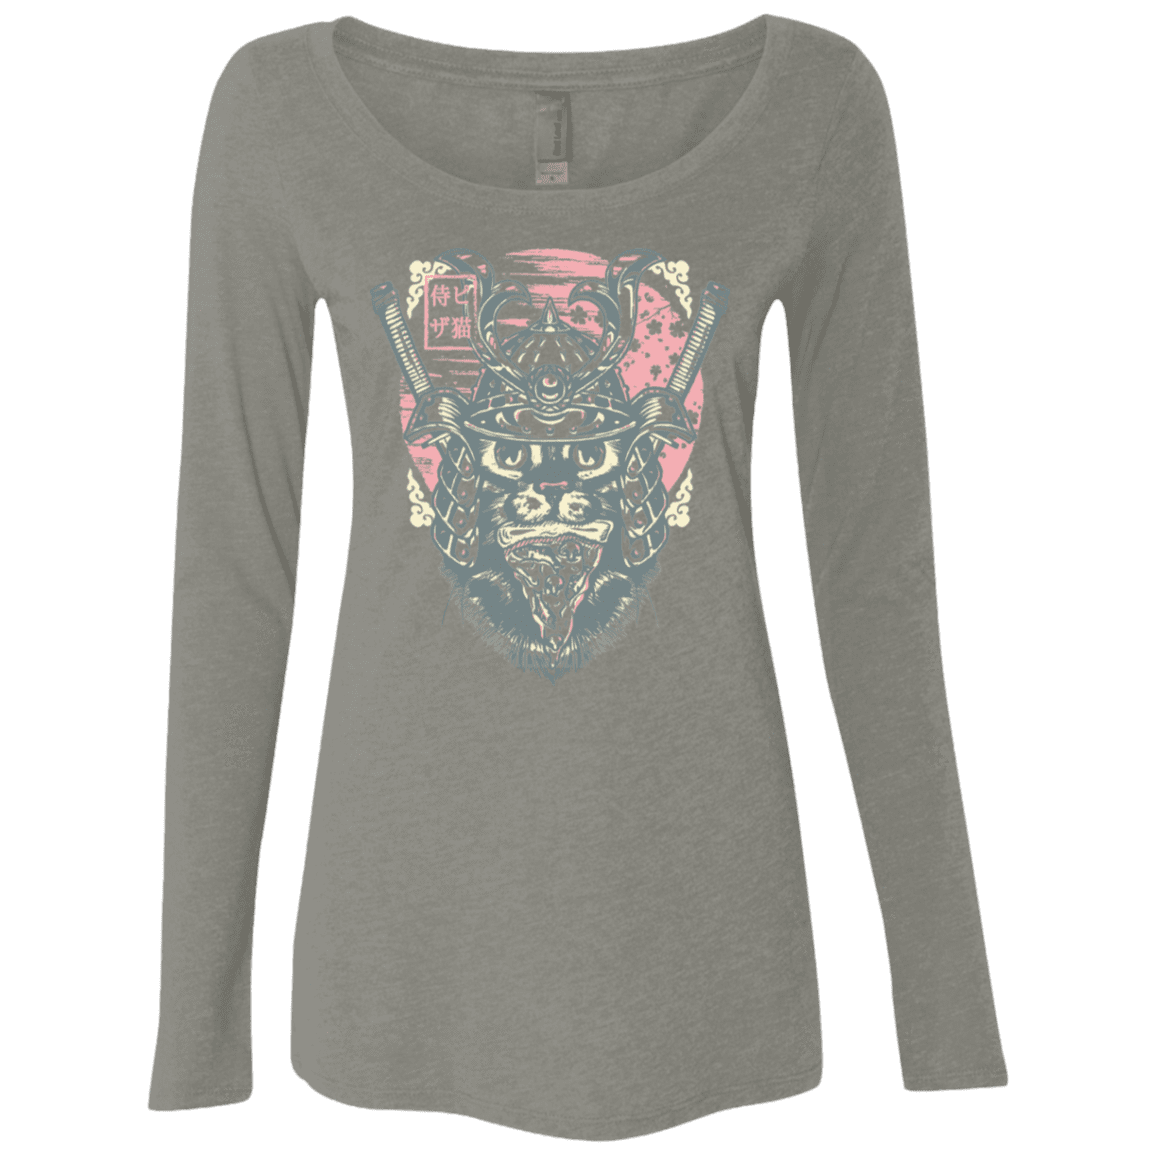 T-Shirts Venetian Grey / S Samurai Pizza Cat Women's Triblend Long Sleeve Shirt